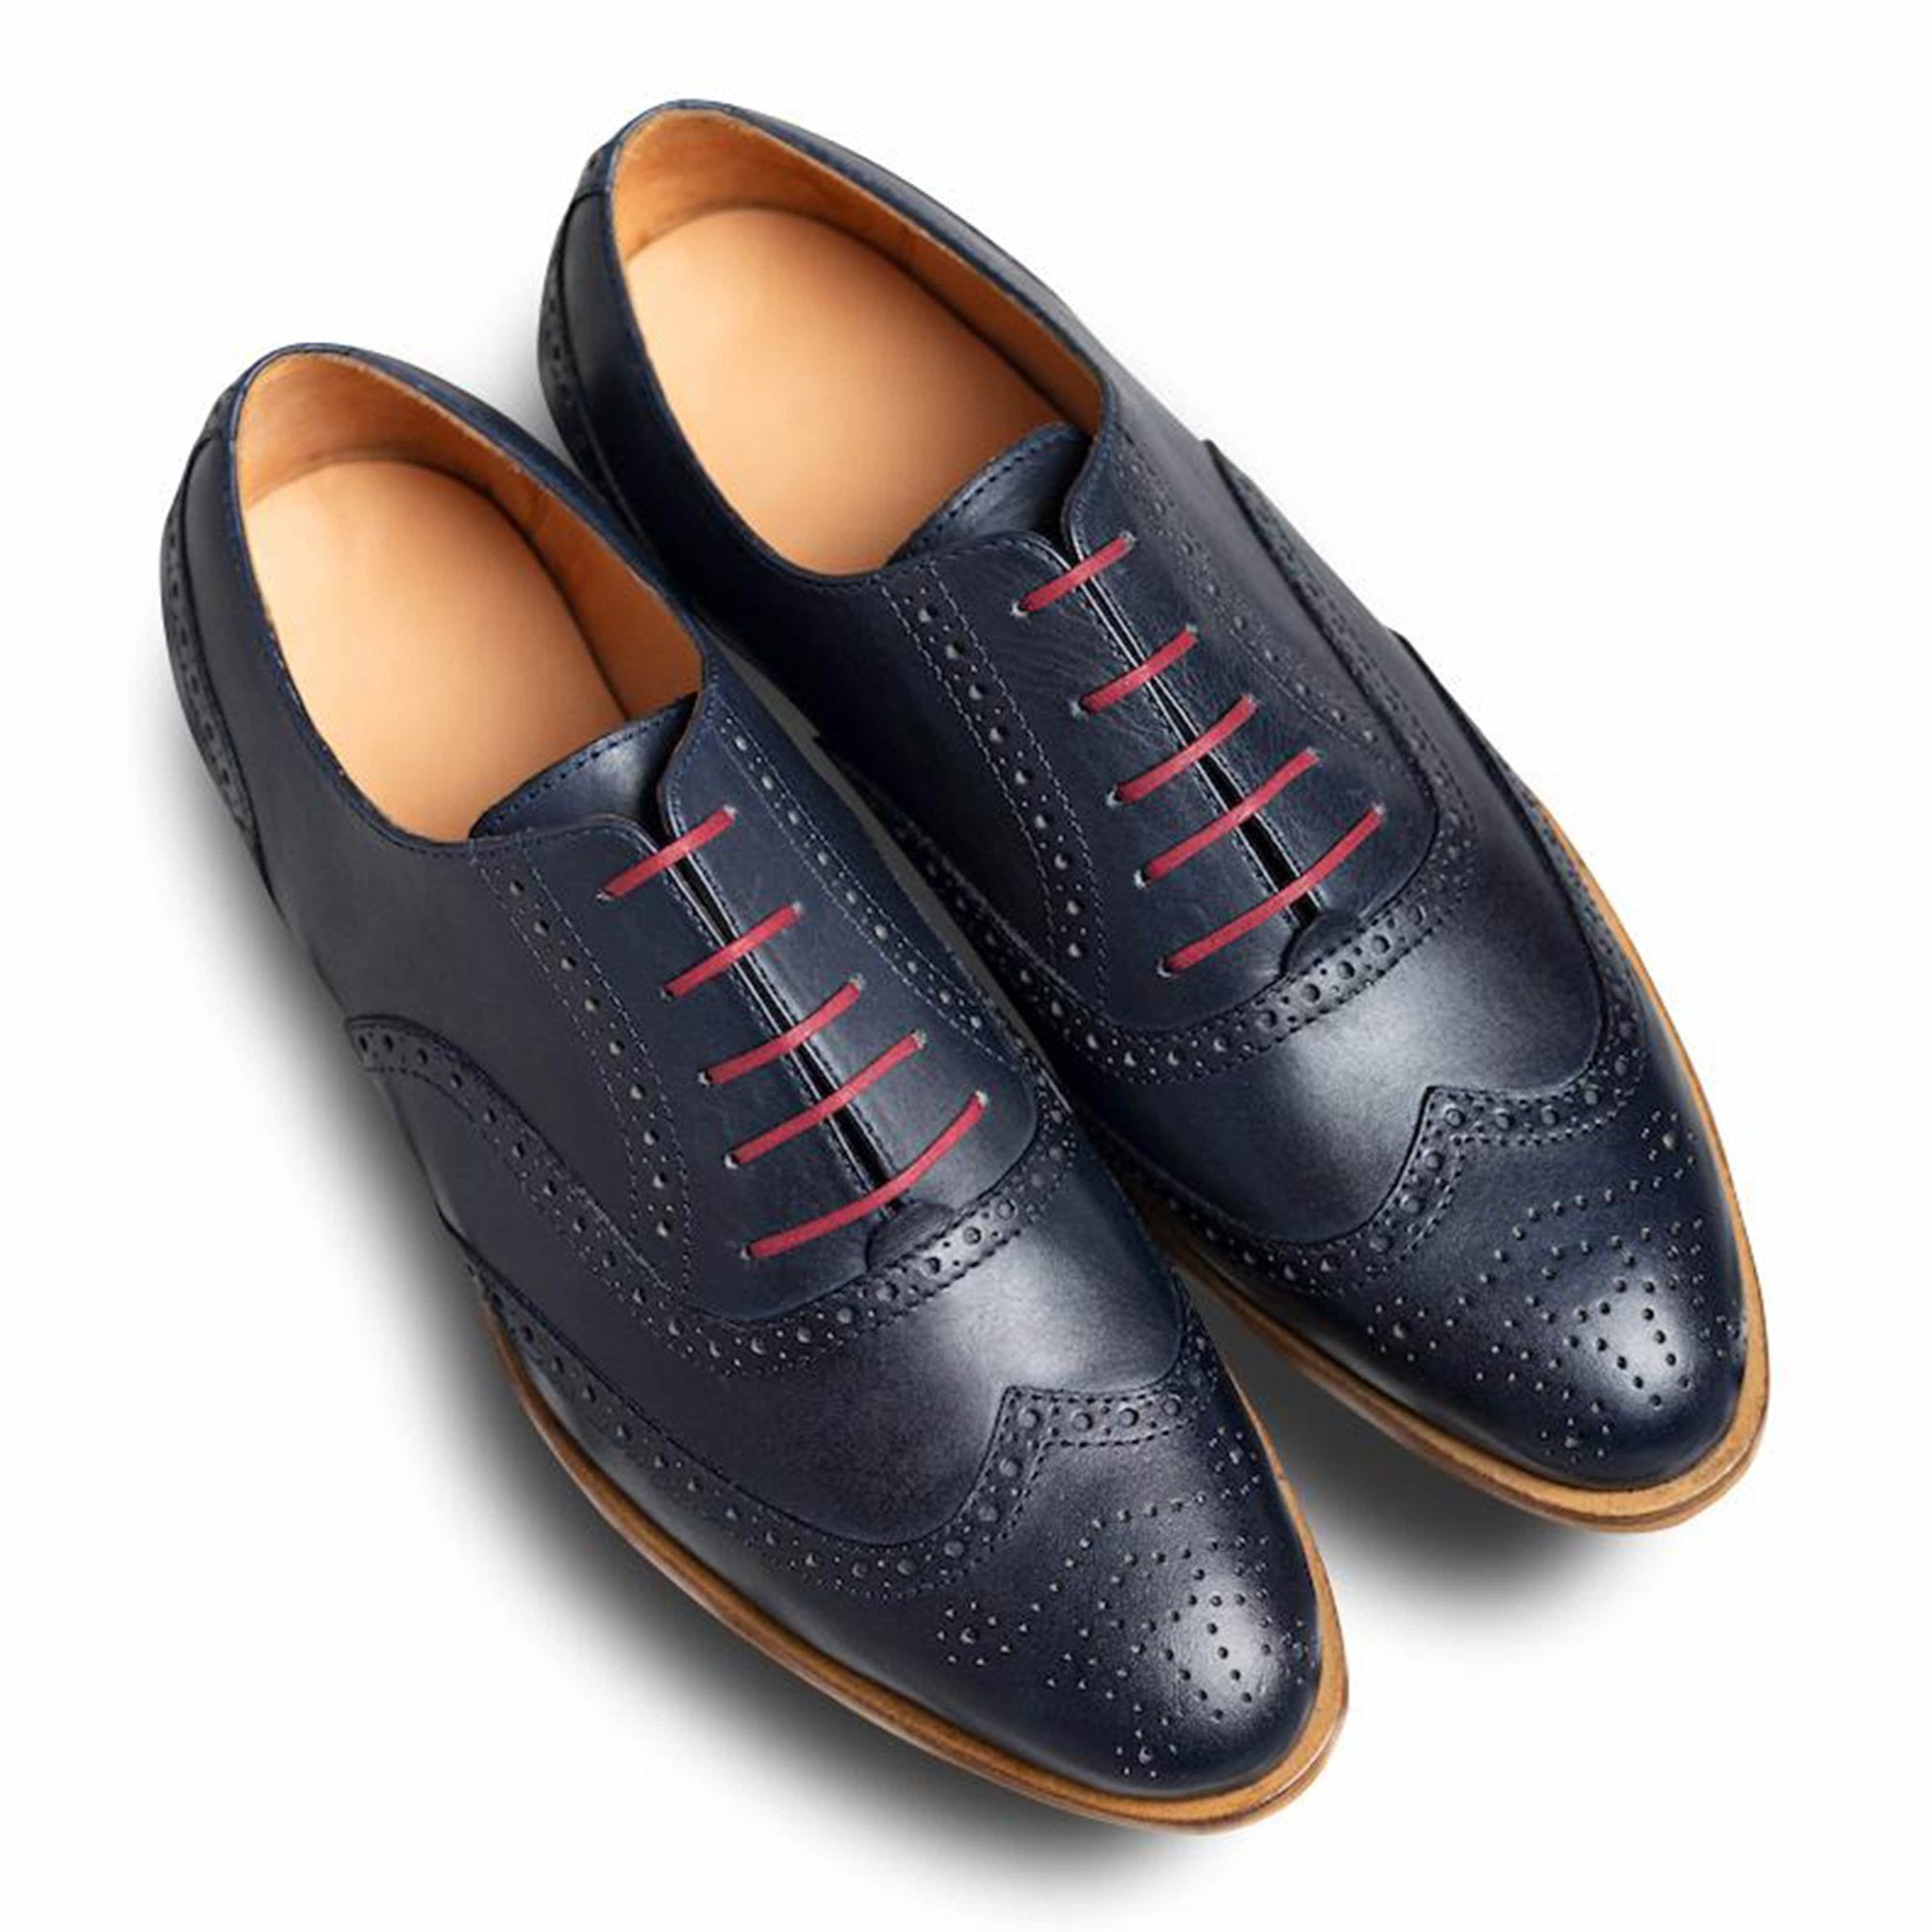 Azzurro Rosso - dmodot Shoes